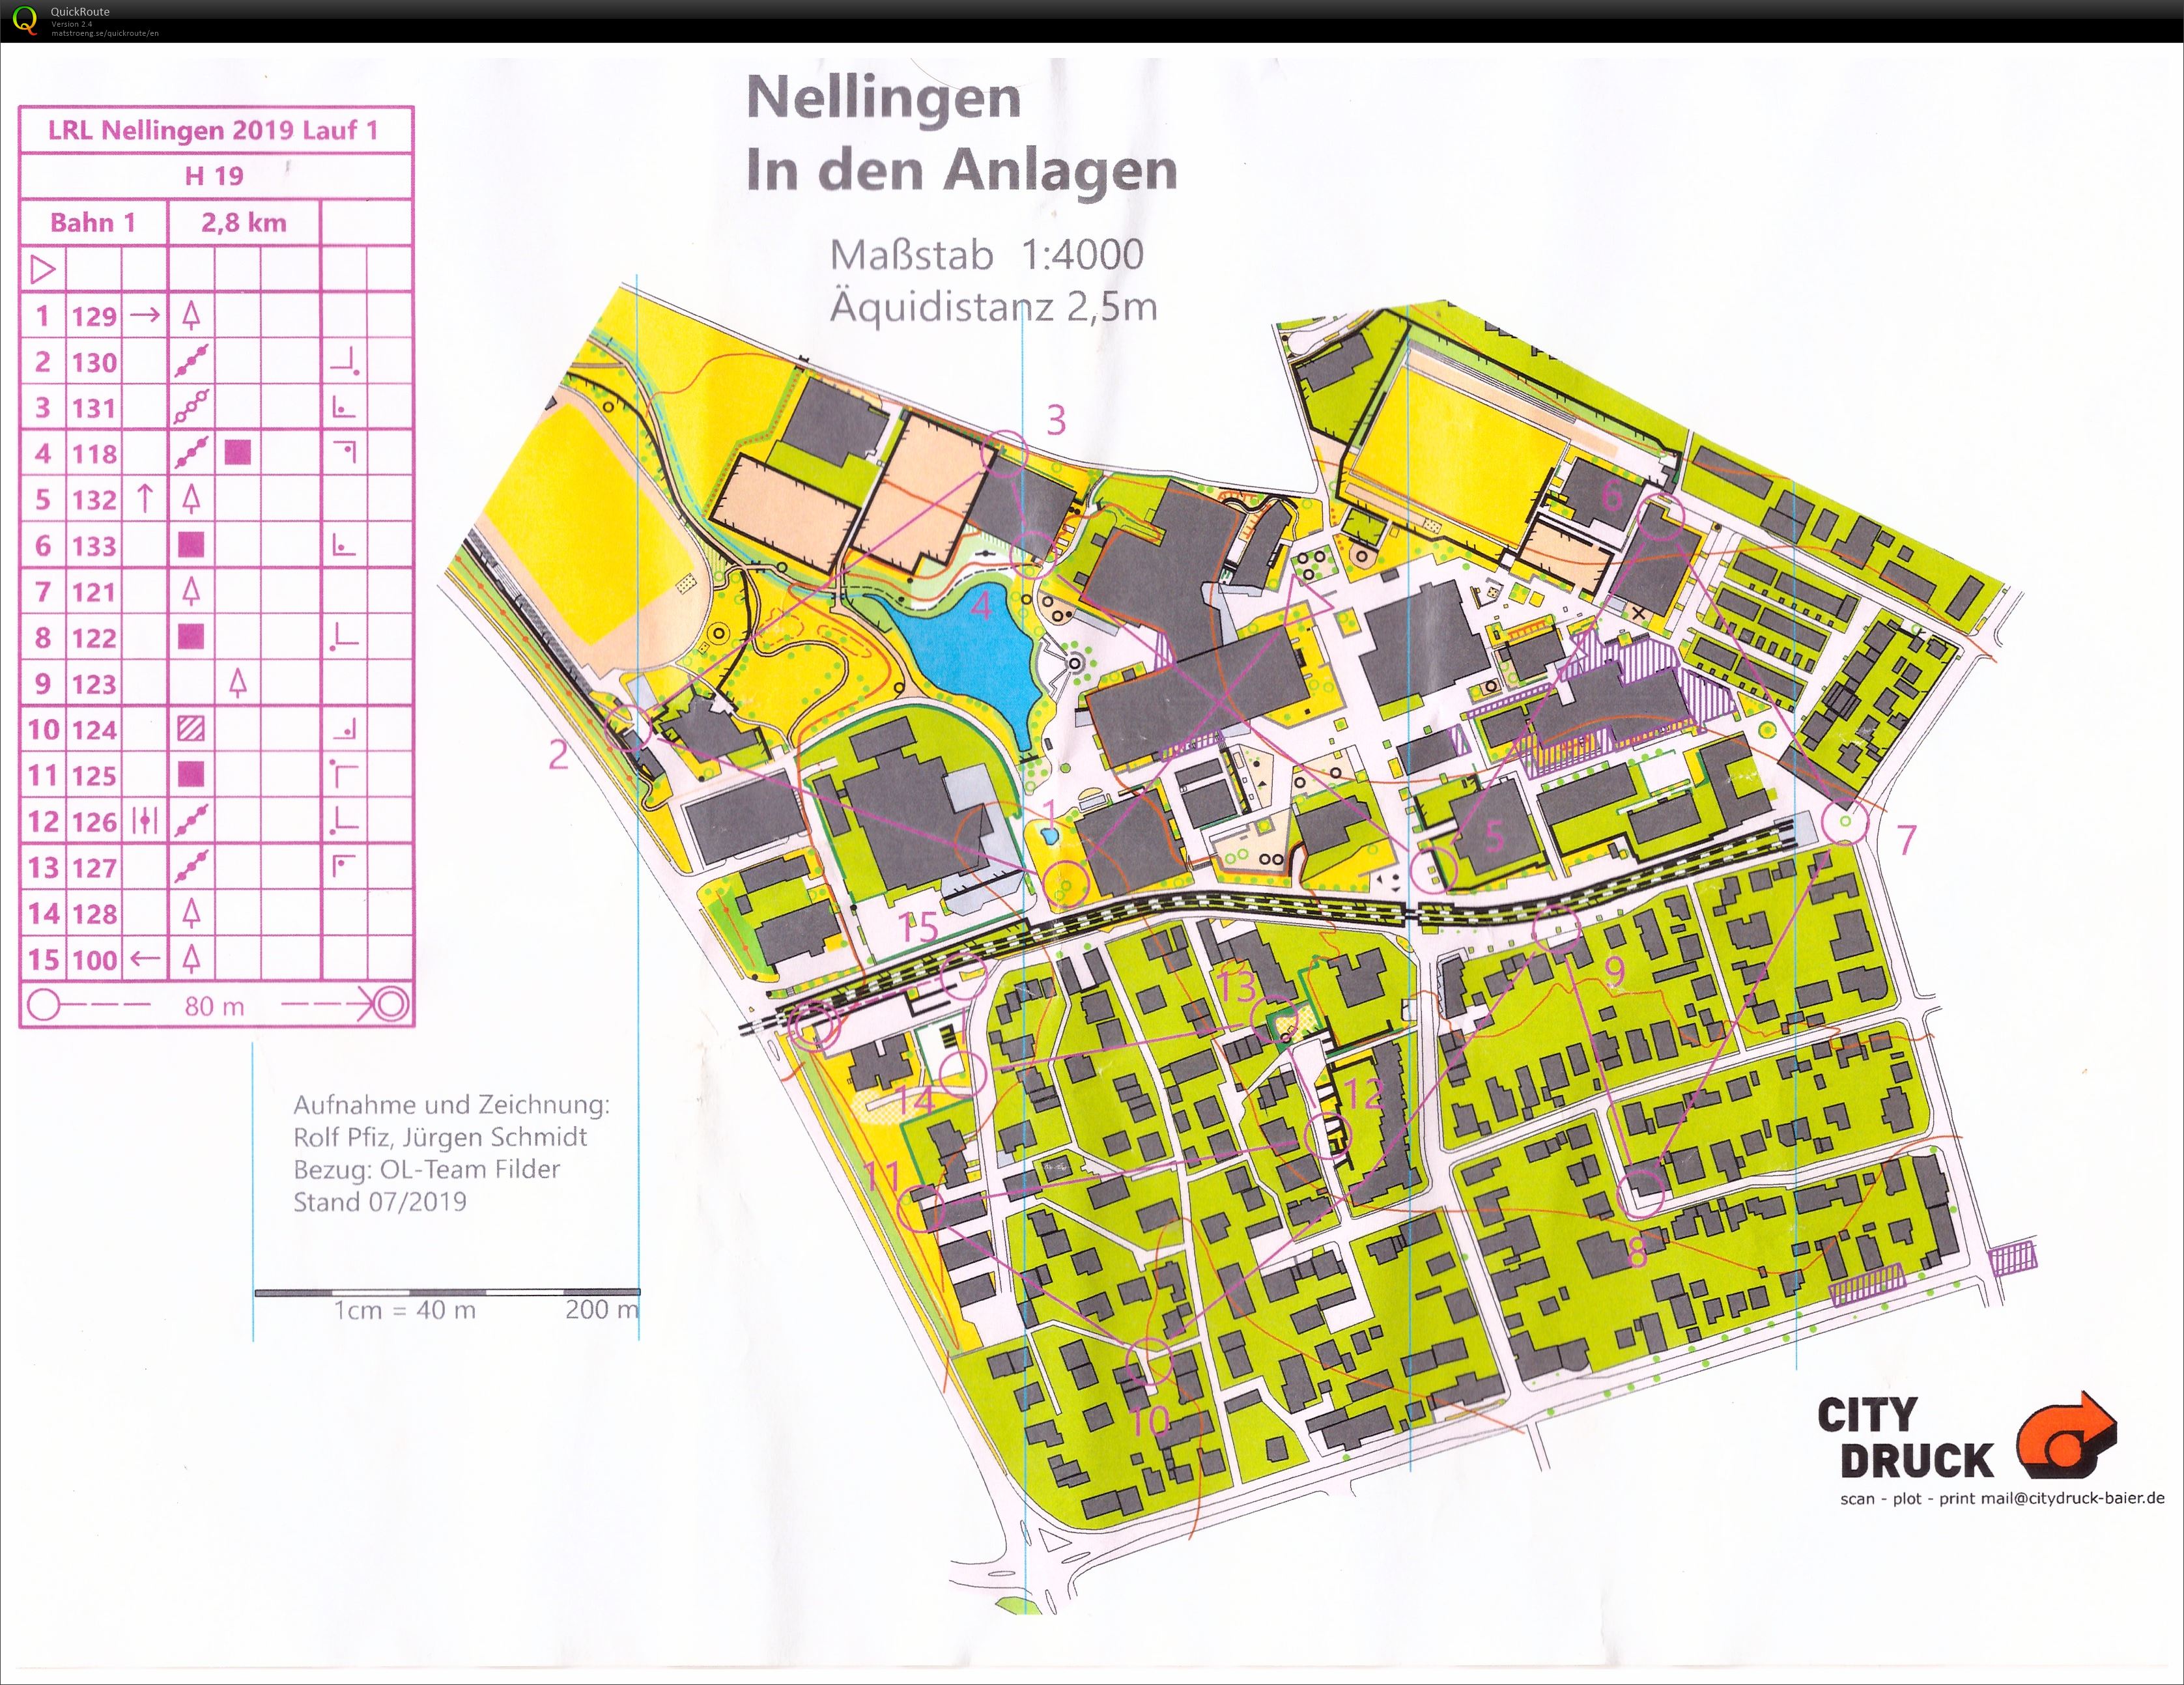 Regional Ranking Event Nellingen Race 1 (20.07.2019)